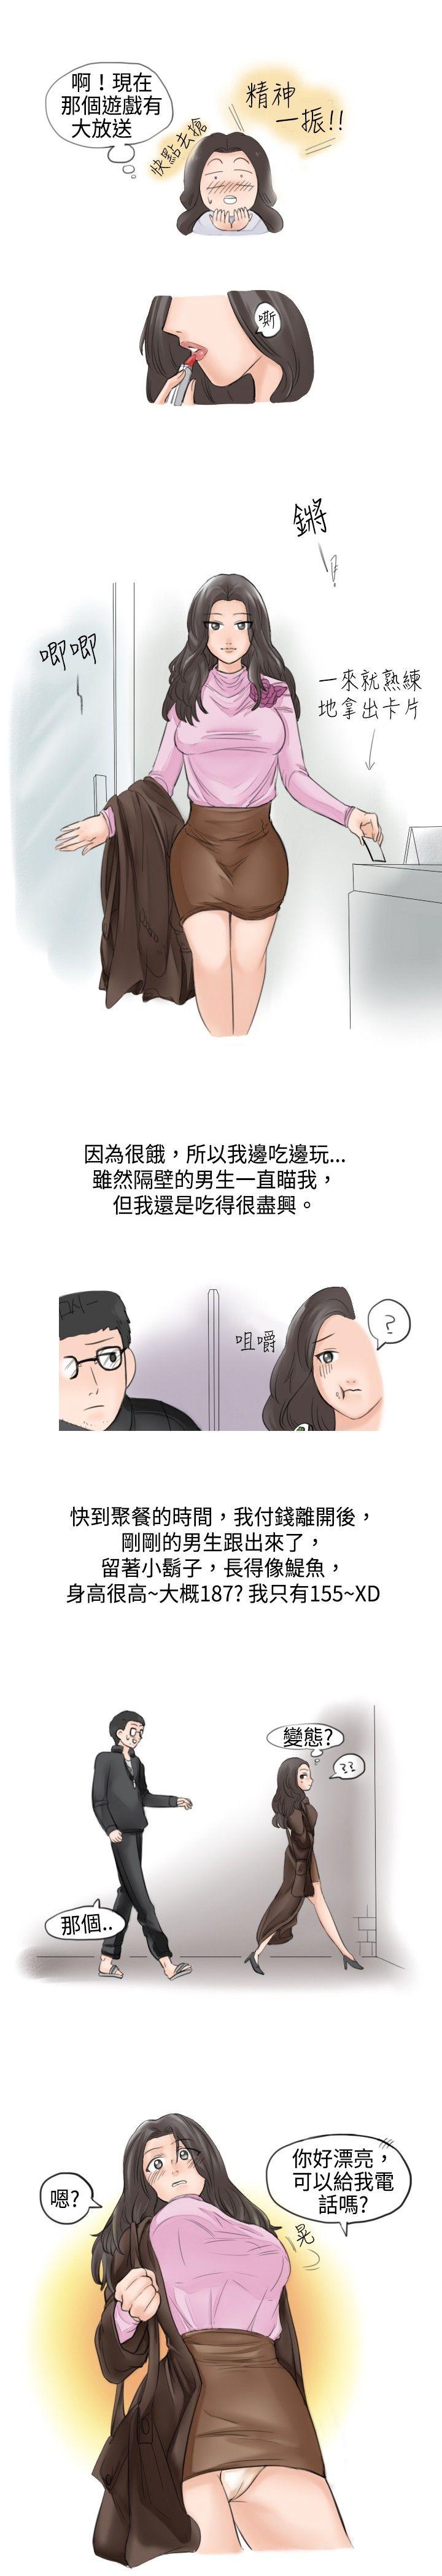 秘密Story  大战网咖男(上) 漫画图片3.jpg